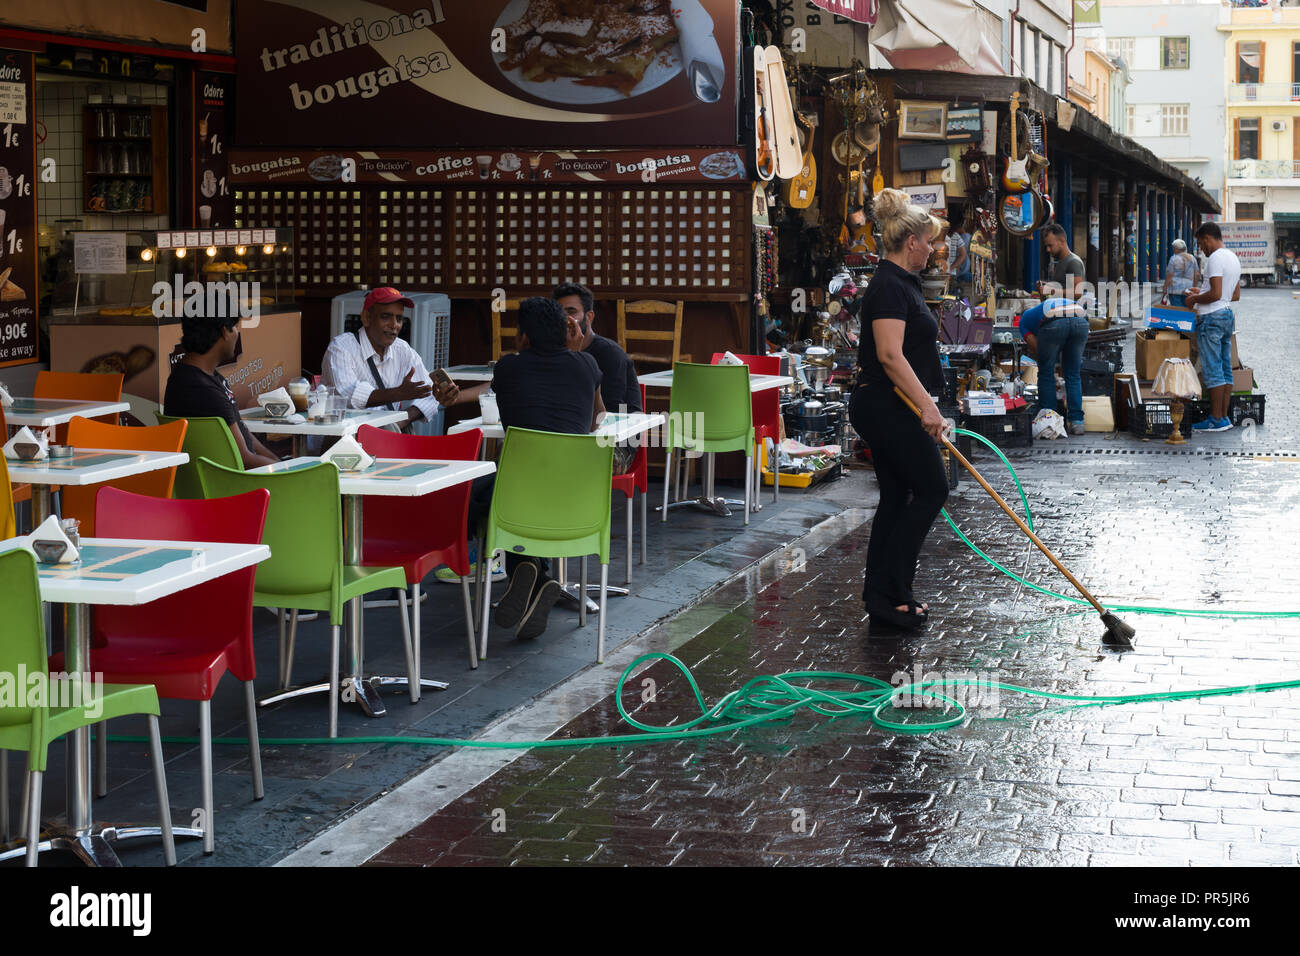 Dimanche après-midi, un employé de snack-bars ouverts à recevoir ses clients, est le nettoyage de la rue en face de la barre, Athènes Grèce Banque D'Images